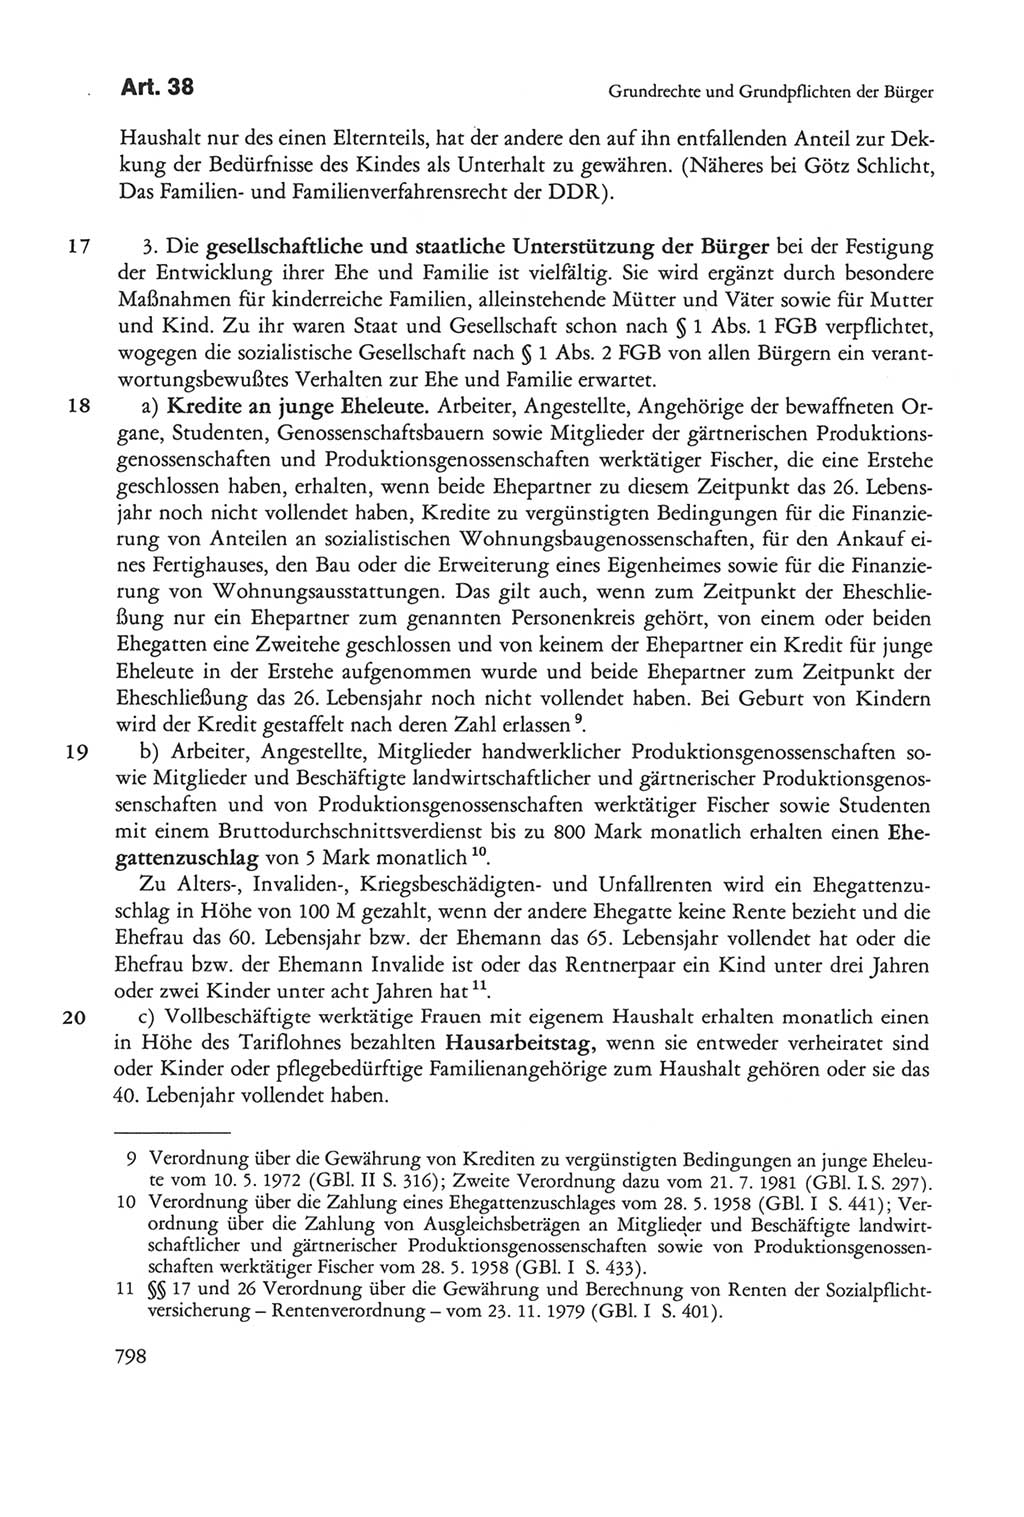 Die sozialistische Verfassung der Deutschen Demokratischen Republik (DDR), Kommentar 1982, Seite 798 (Soz. Verf. DDR Komm. 1982, S. 798)